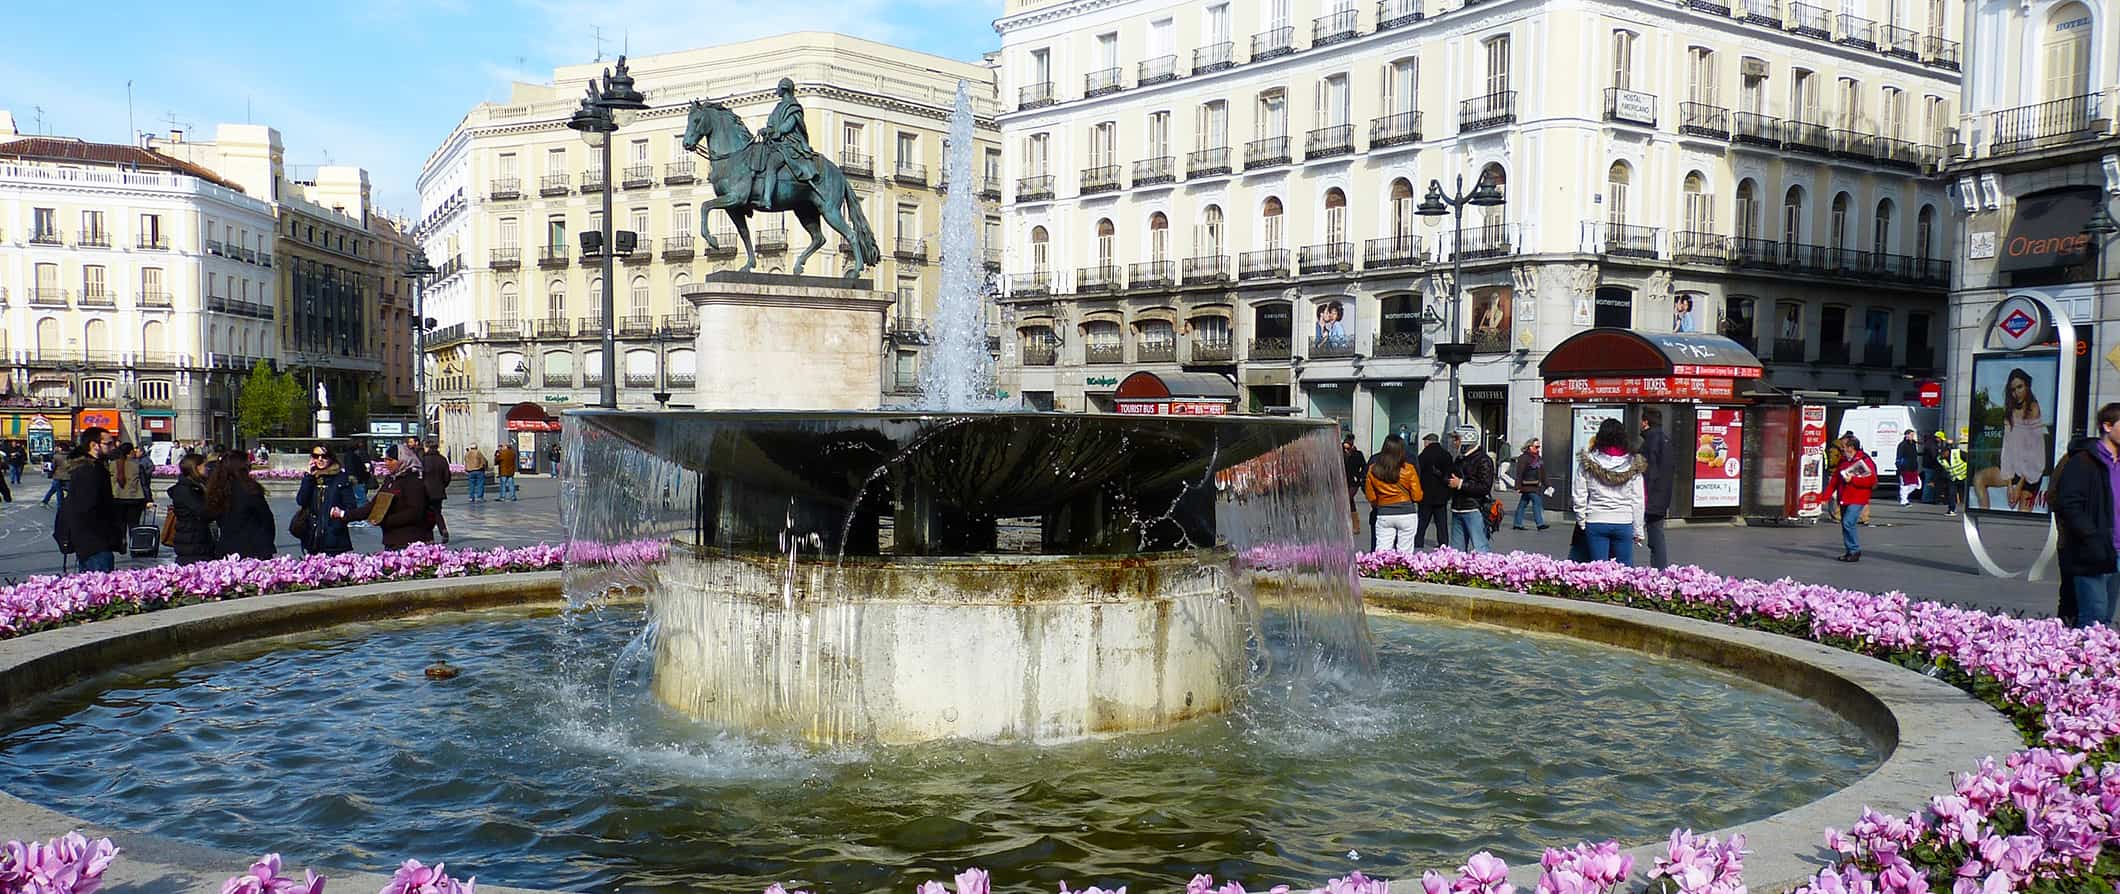 Pessoas se aglomeram em torno de uma enorme fonte histórica em um dia ensolarado em Madri, Espanha